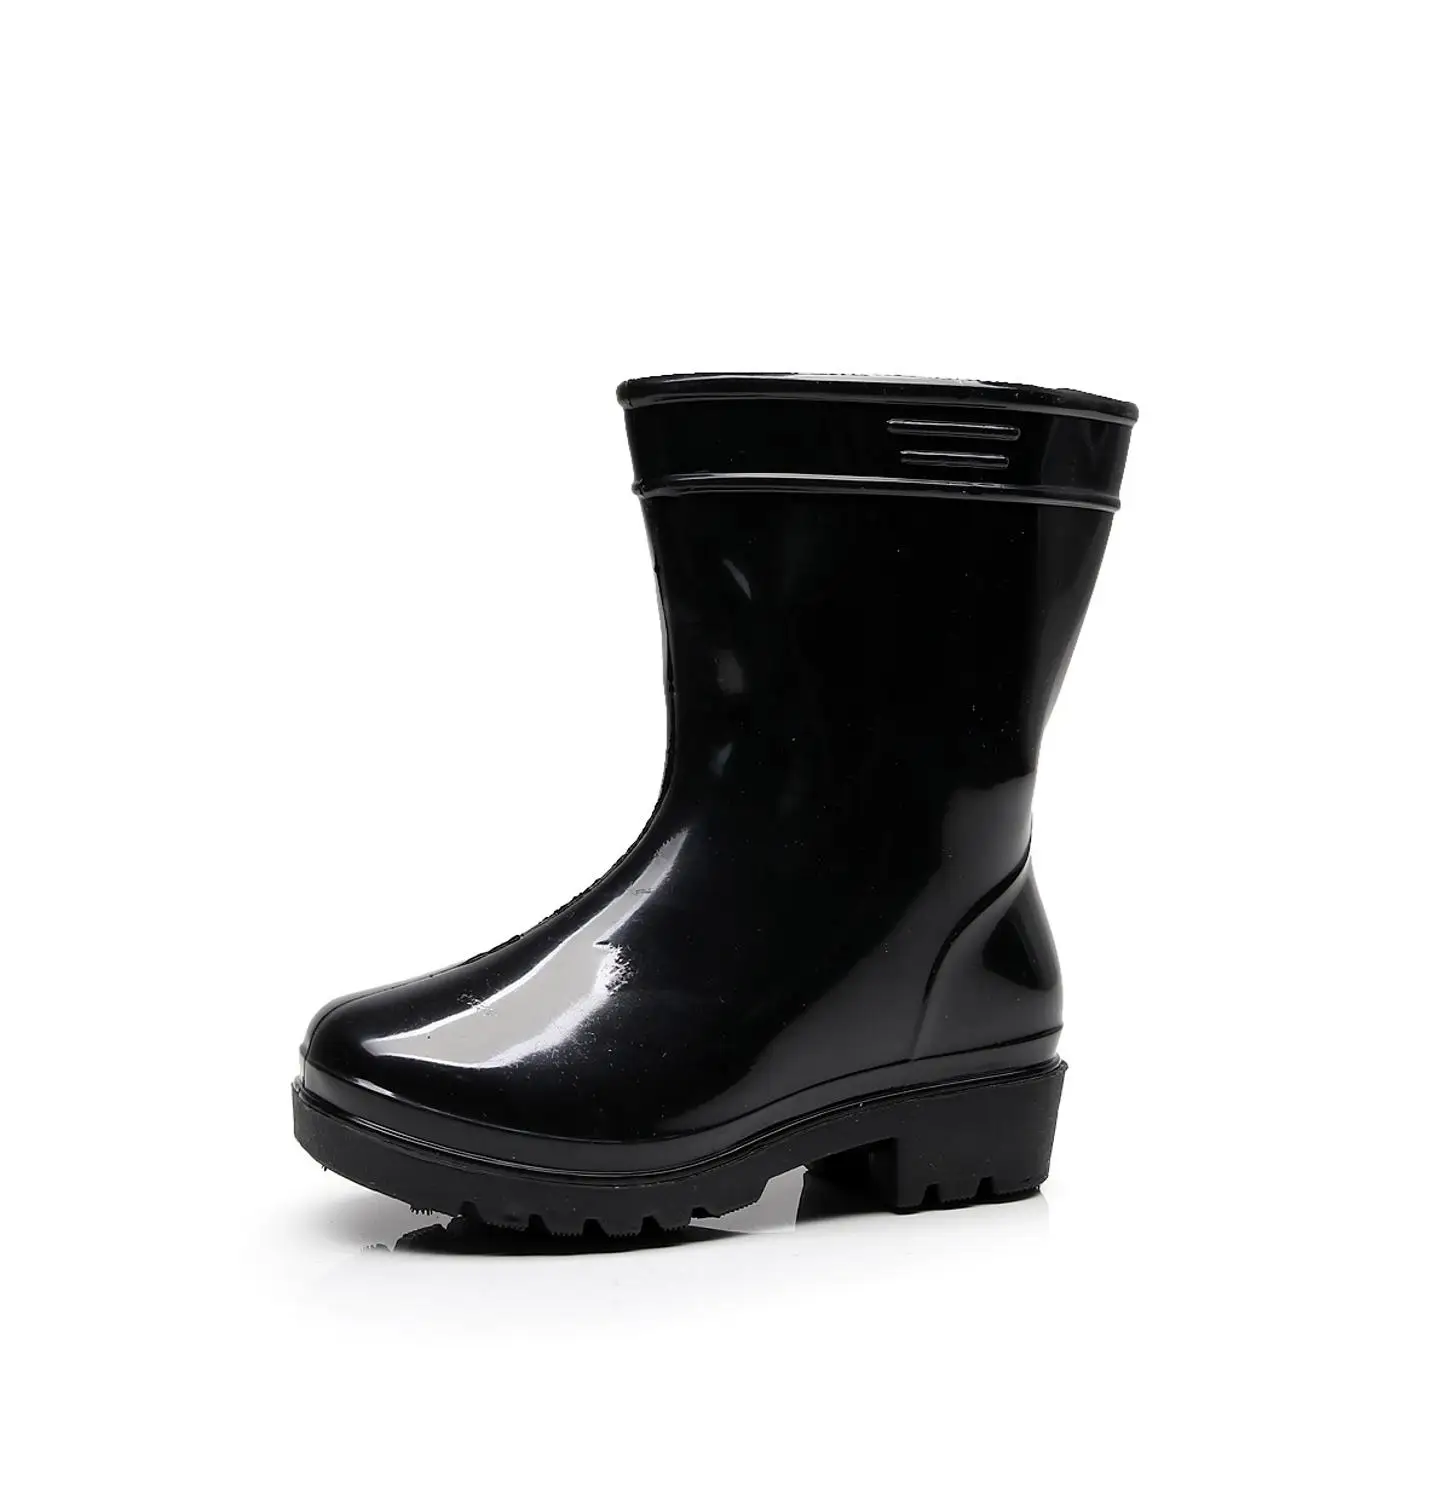 Дети для нескользящей резины обувь для защиты от дождя maleGirls непромокаемая детская водяная обувь детские резиновые сапоги четыре сезона универсальная обувь для воды - Цвет: Черный